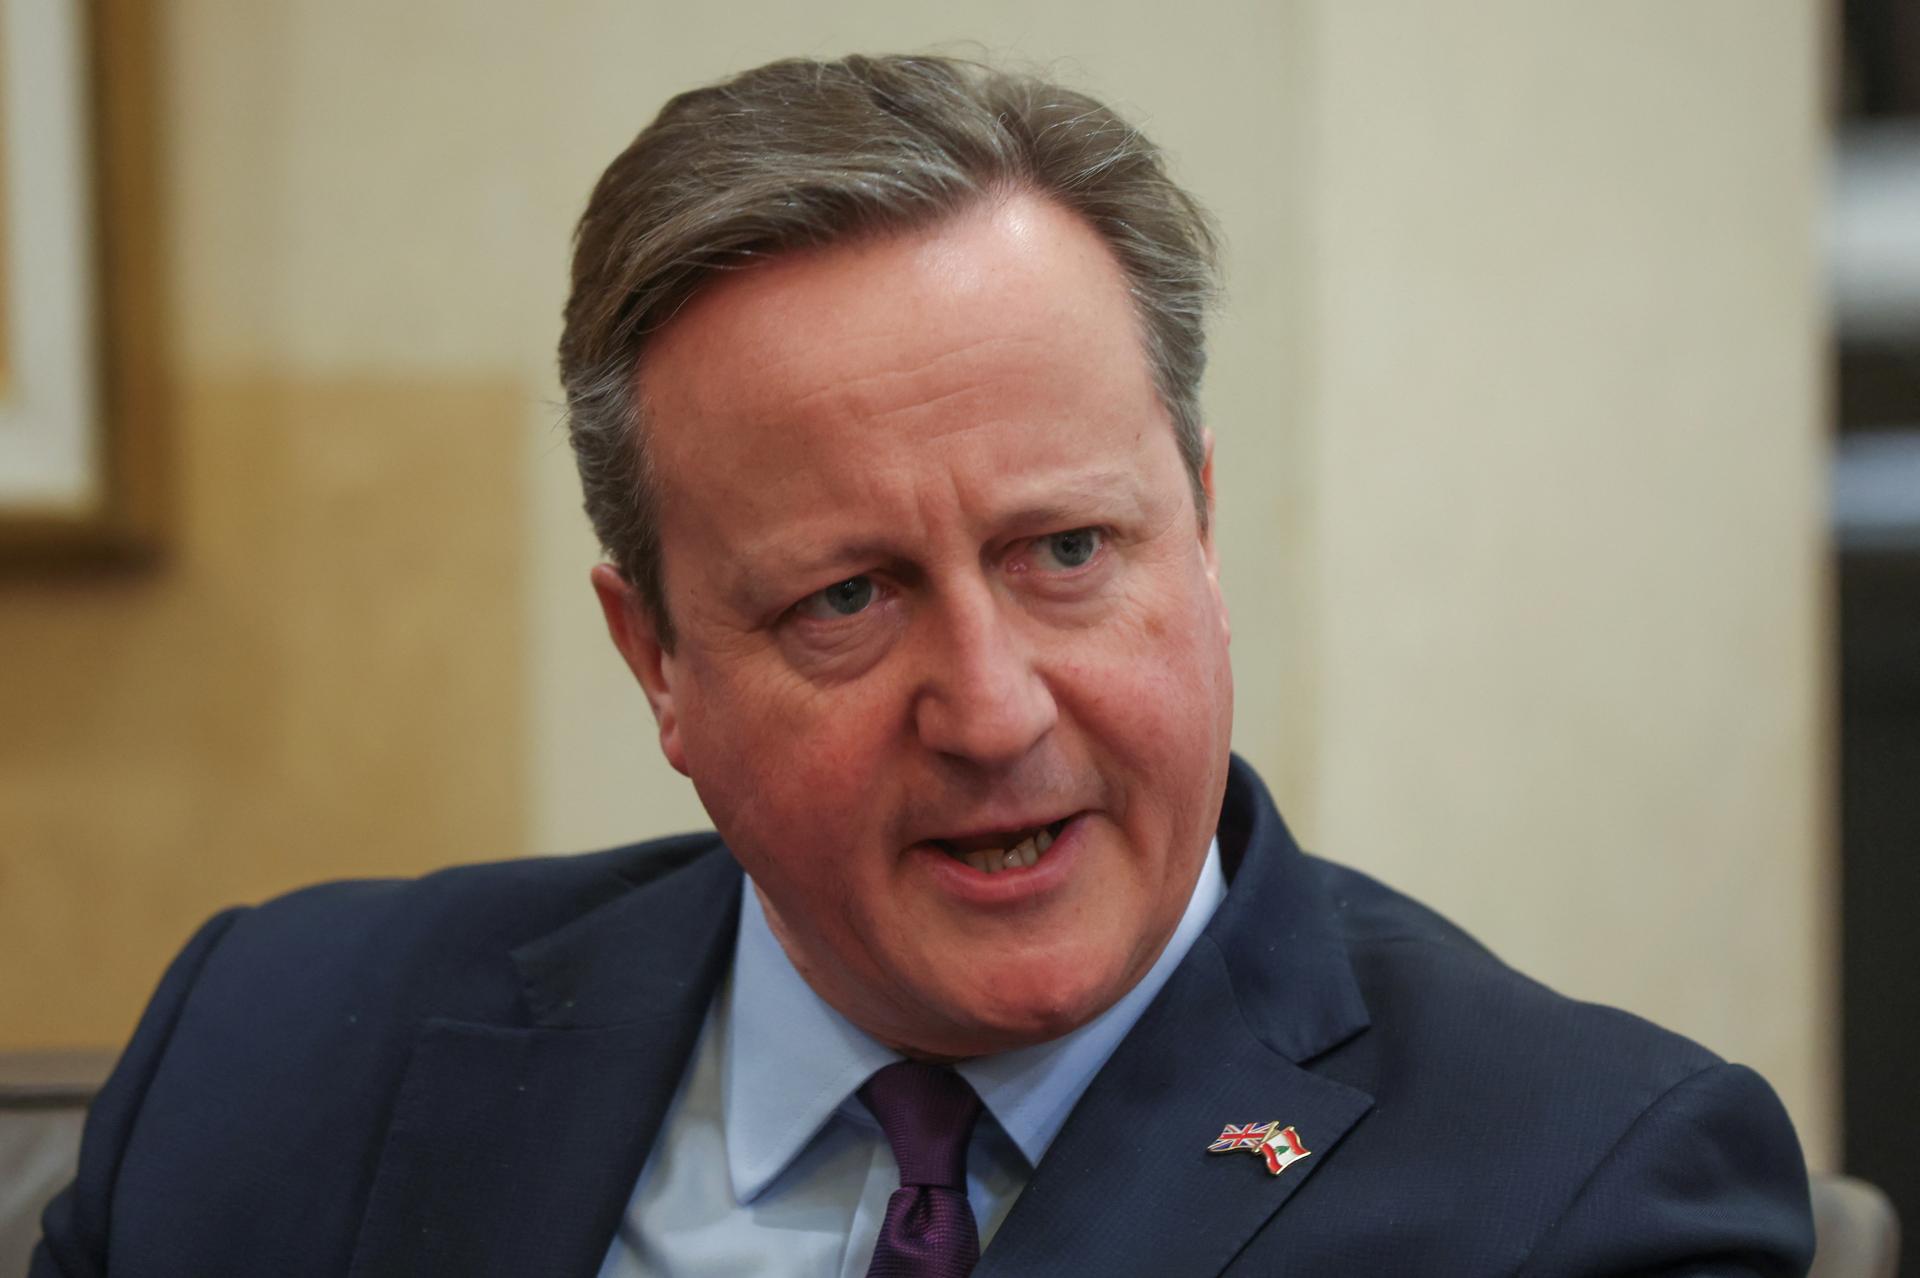 Británia by mohla uznať palestínsky štát hneď po prímerí v Gaze, povedal Cameron